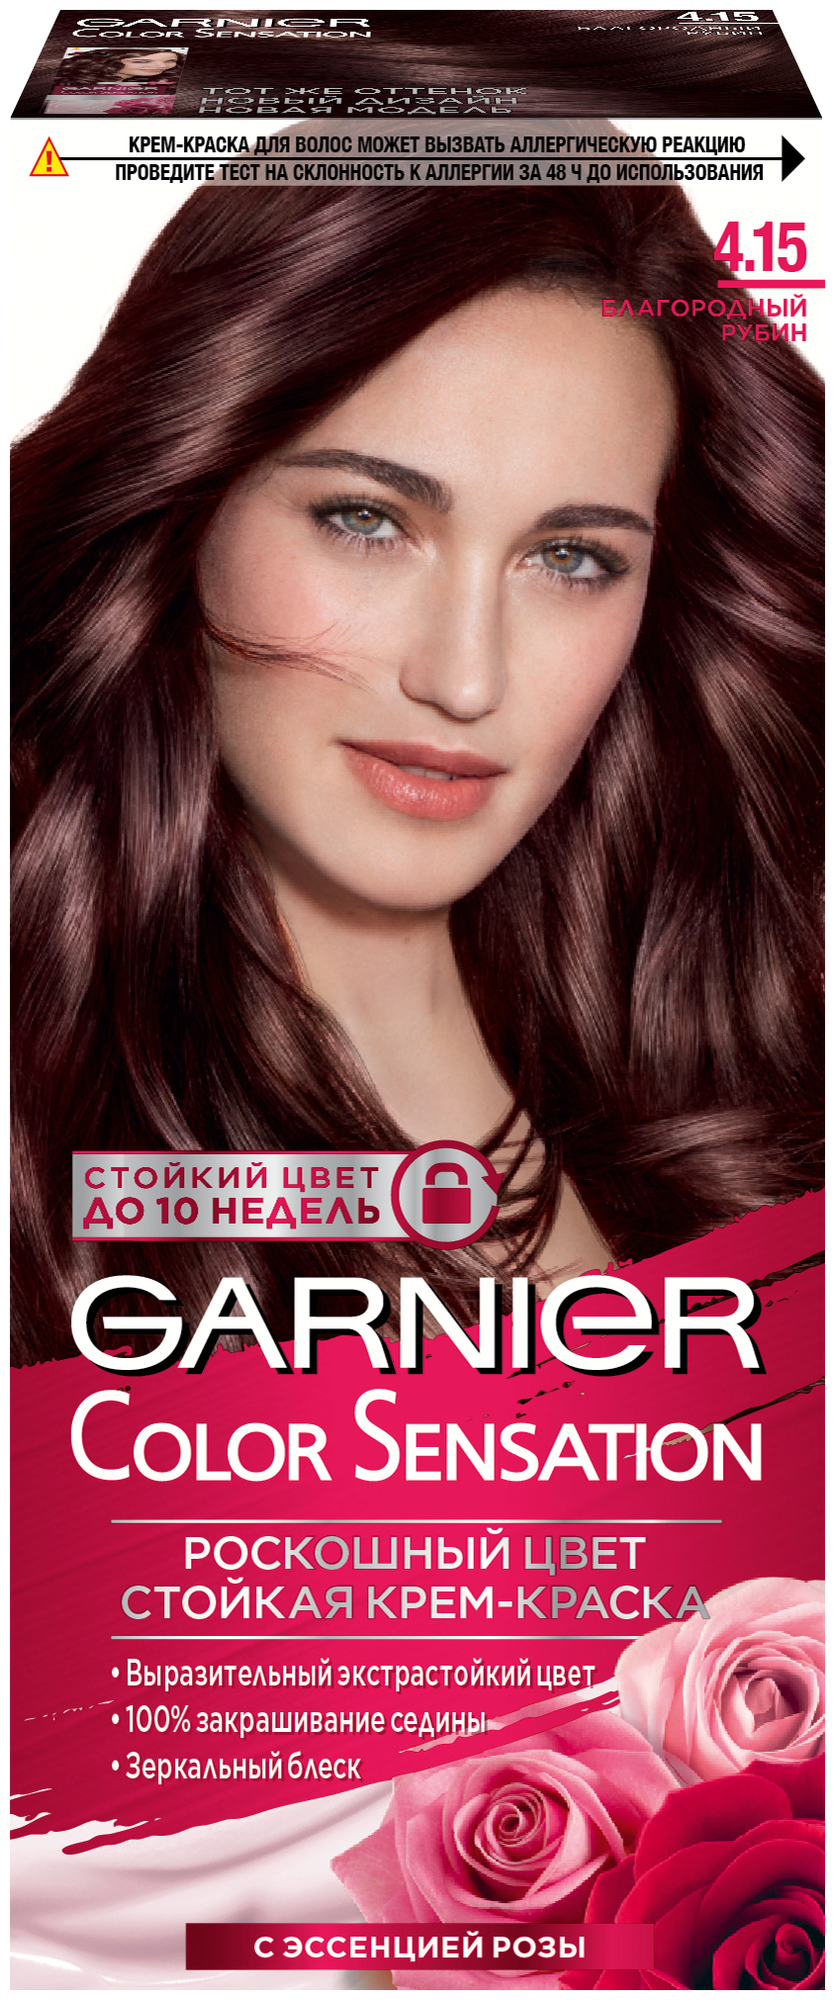 GARNIER Color Sensation стойкая крем-краска для волос, 4.15, Благородный рубин